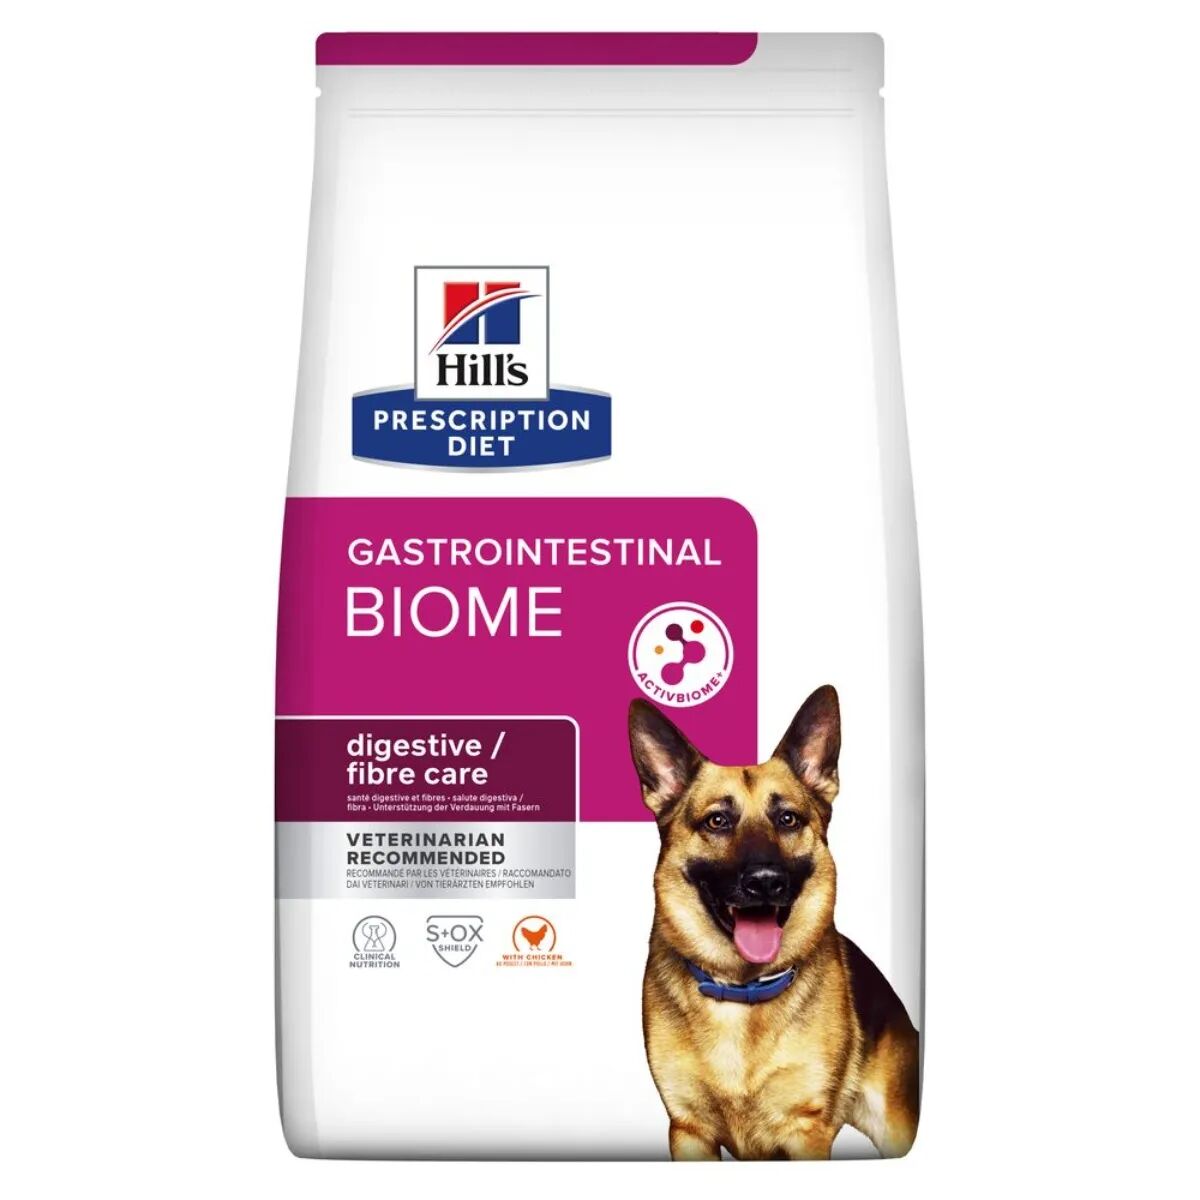 hills hill's prescription diet gastrointestinal biome alimento secco per cani 1.5kg